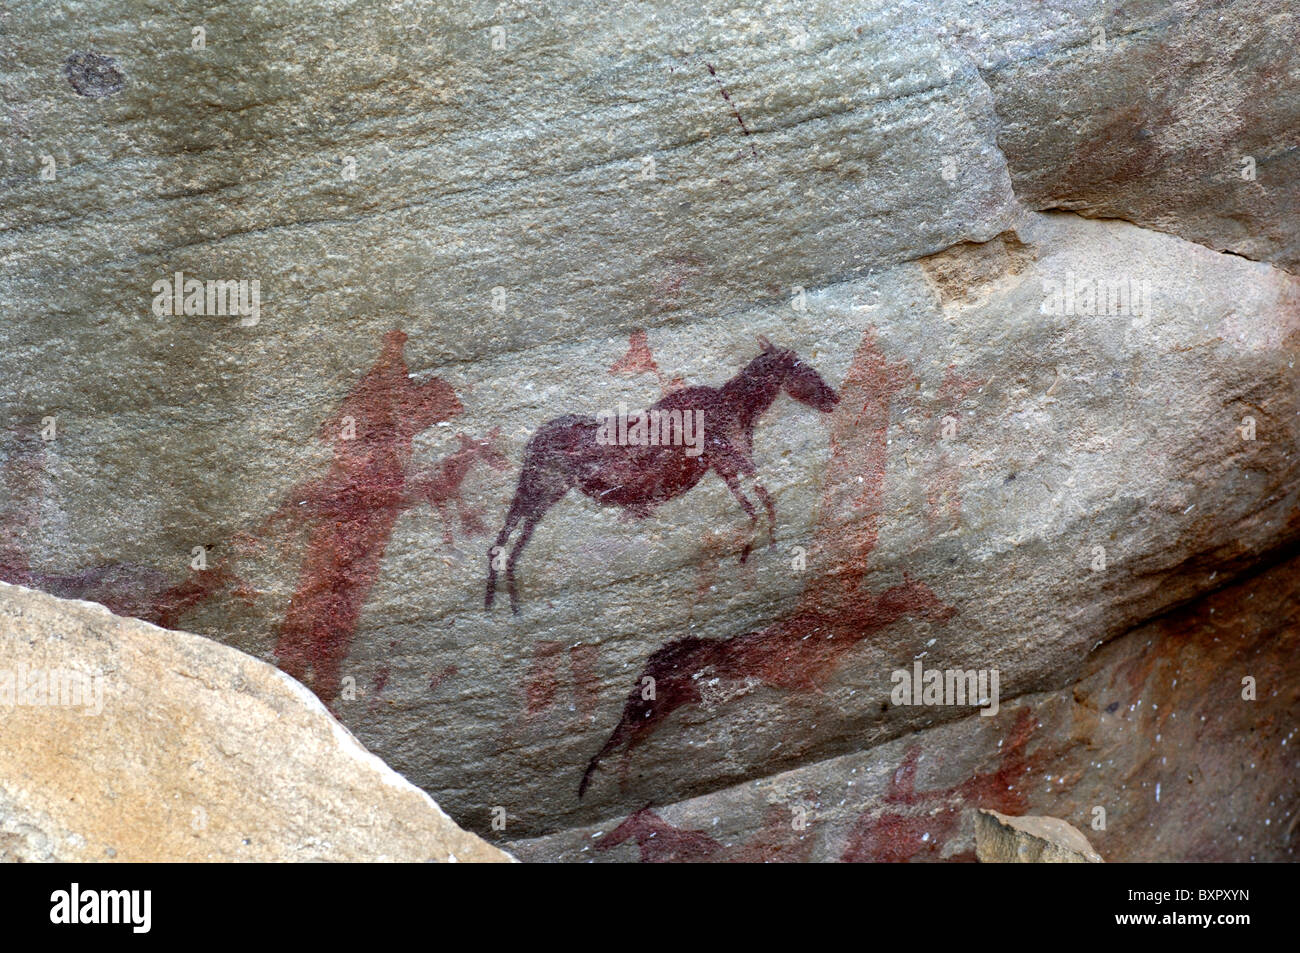 Paintintg rock préhistorique de l'éland du Cap, la moule quagga, Séville ou route de l'Art Rock, montagnes Cederberg, Afrique du Sud Banque D'Images